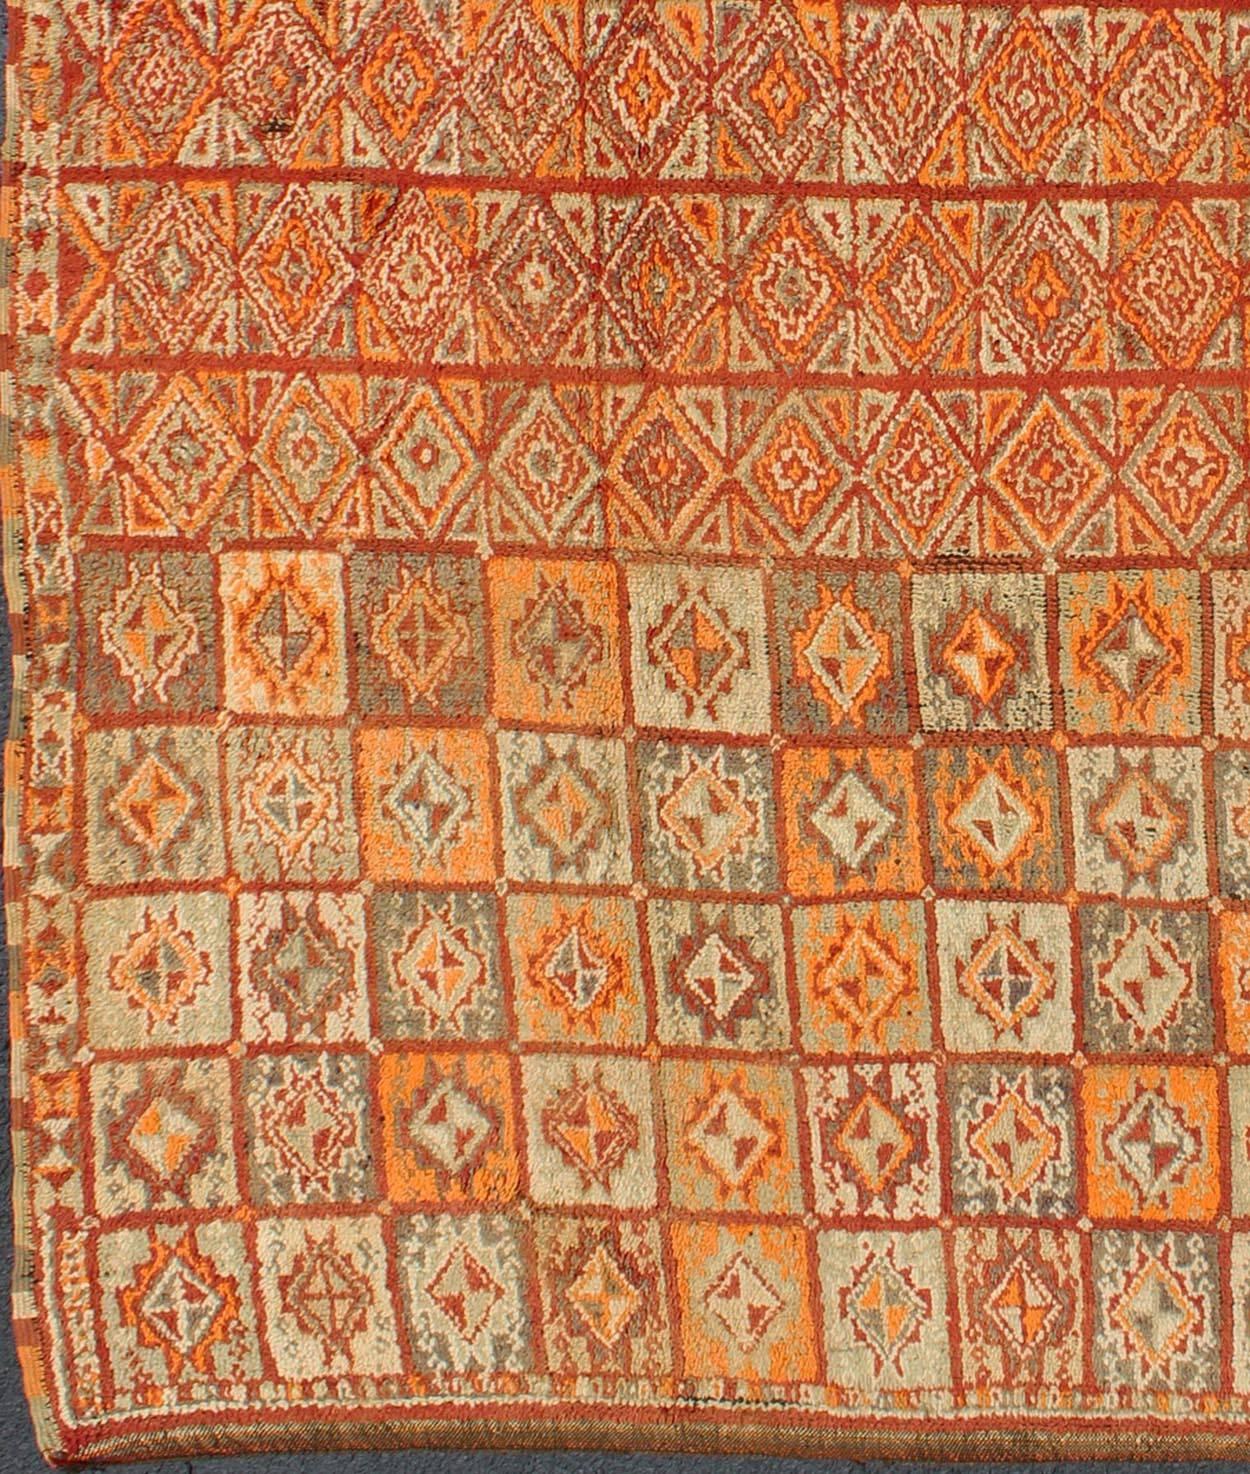 Tapis marocain vintage aux couleurs de l'automne, rouge, citrouille, orange et vert clair
Ce tapis marocain coloré présente une grille de motifs géométriques et une multitude de couleurs automnales comme le rouge, le potiron, l'orange et des